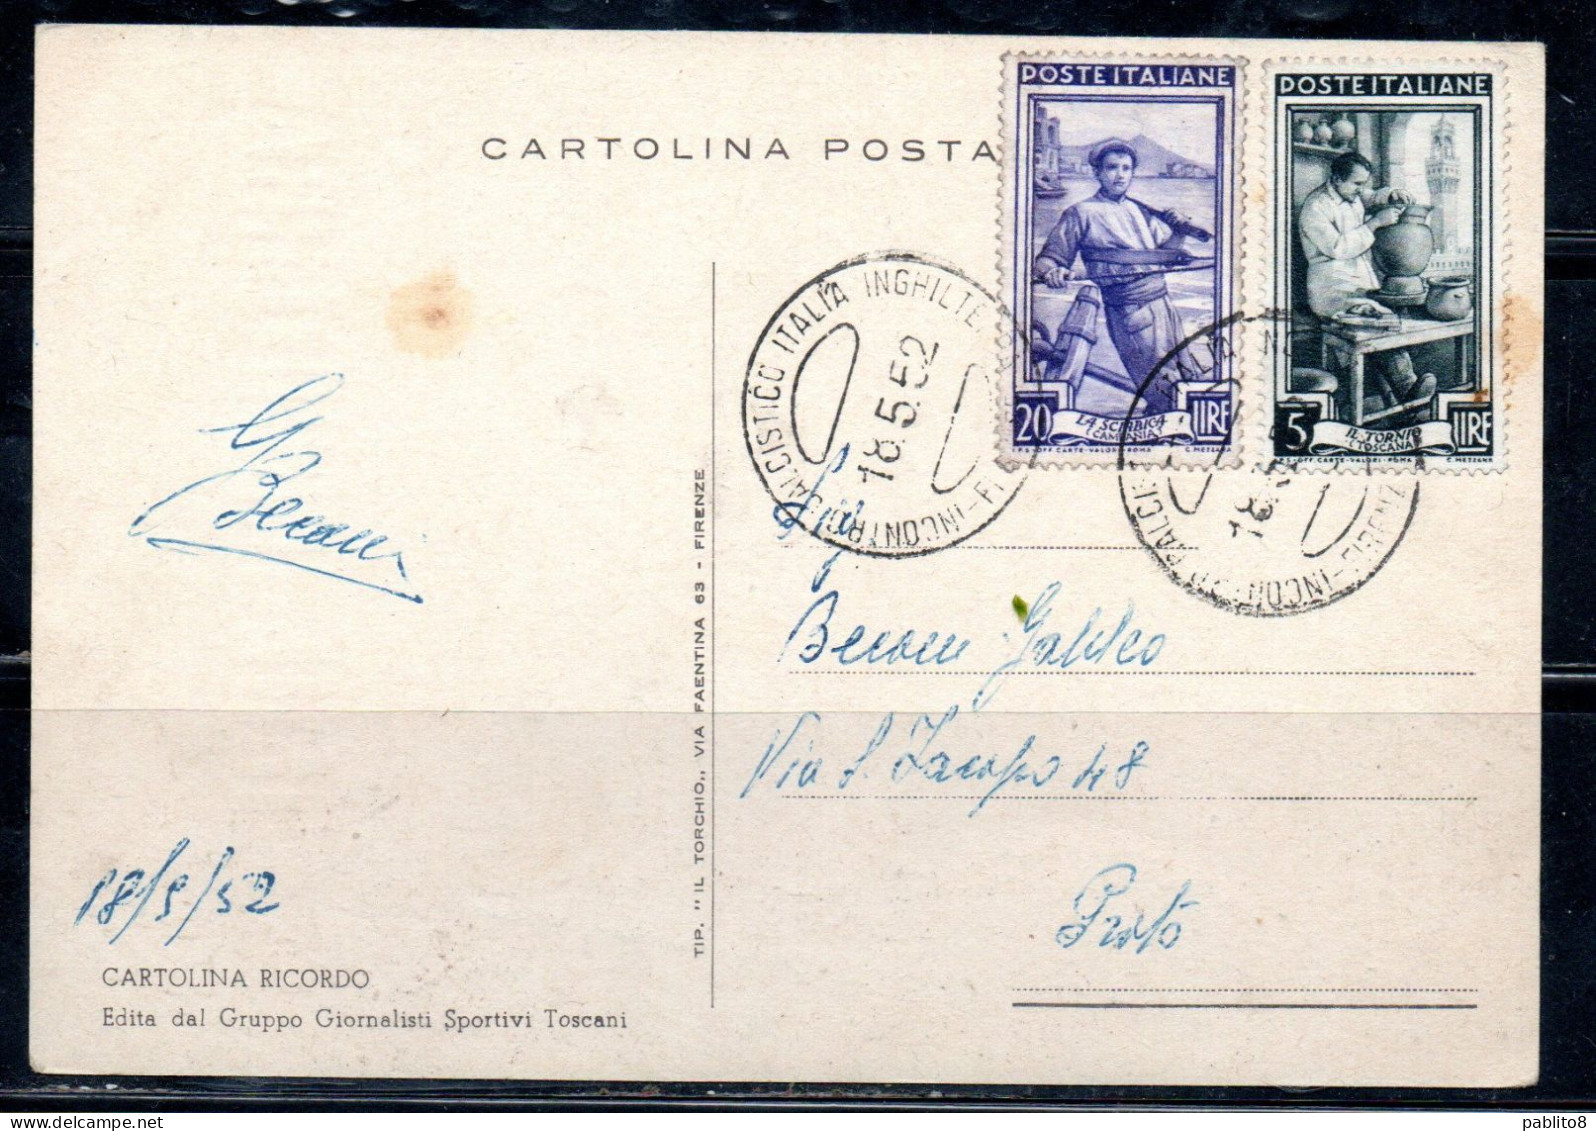 ITALIA REPUBBLICA ITALY REPUBLIC 18 05 1952 IN RICORDO DI ITALIA-INGHILTERRA CALCIO MAXI MAXIMUM CARD CARTOLINA CARTE - Cartes-Maximum (CM)